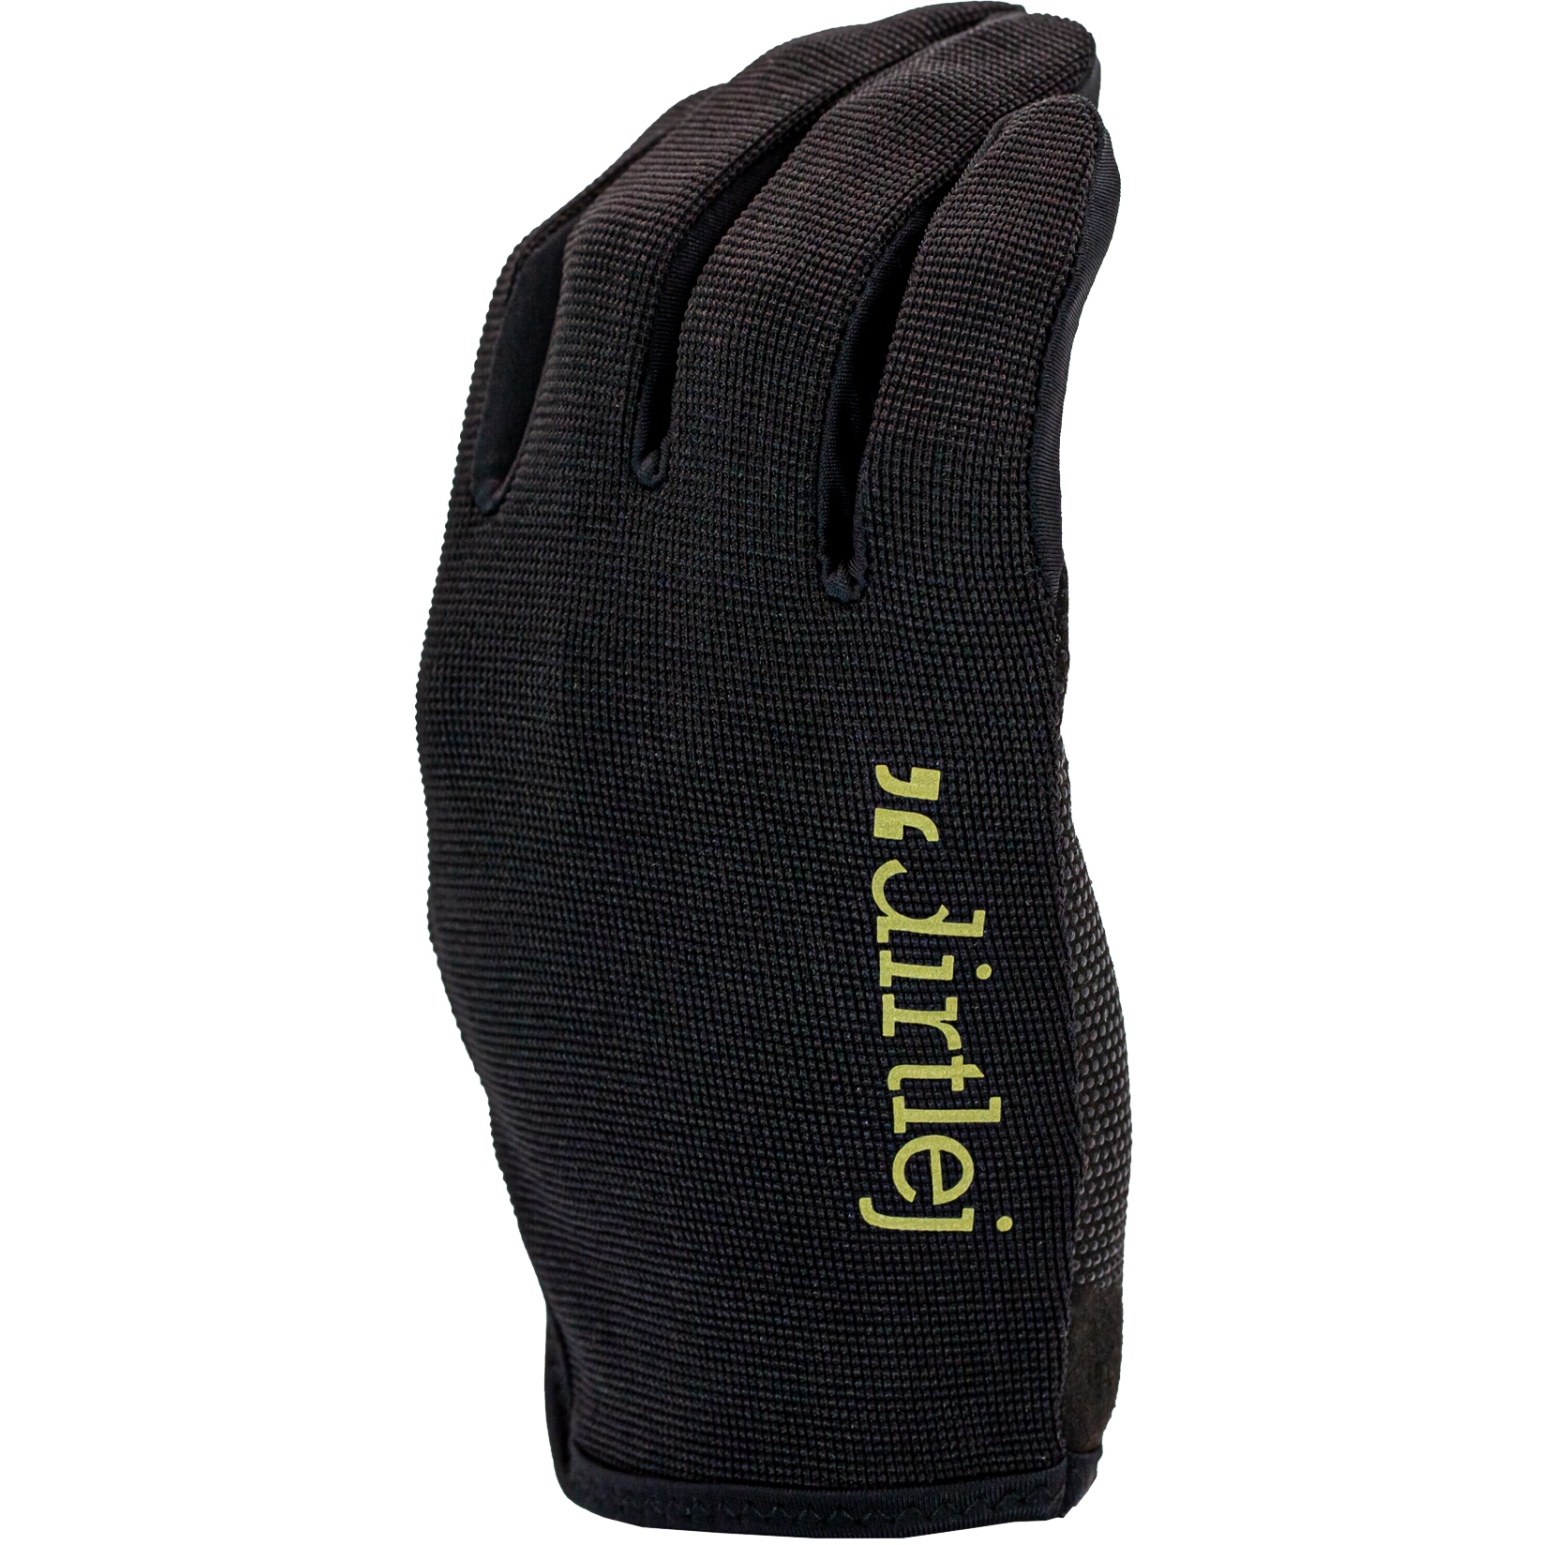 Productfoto van Dirtlej MTB Gloves - black